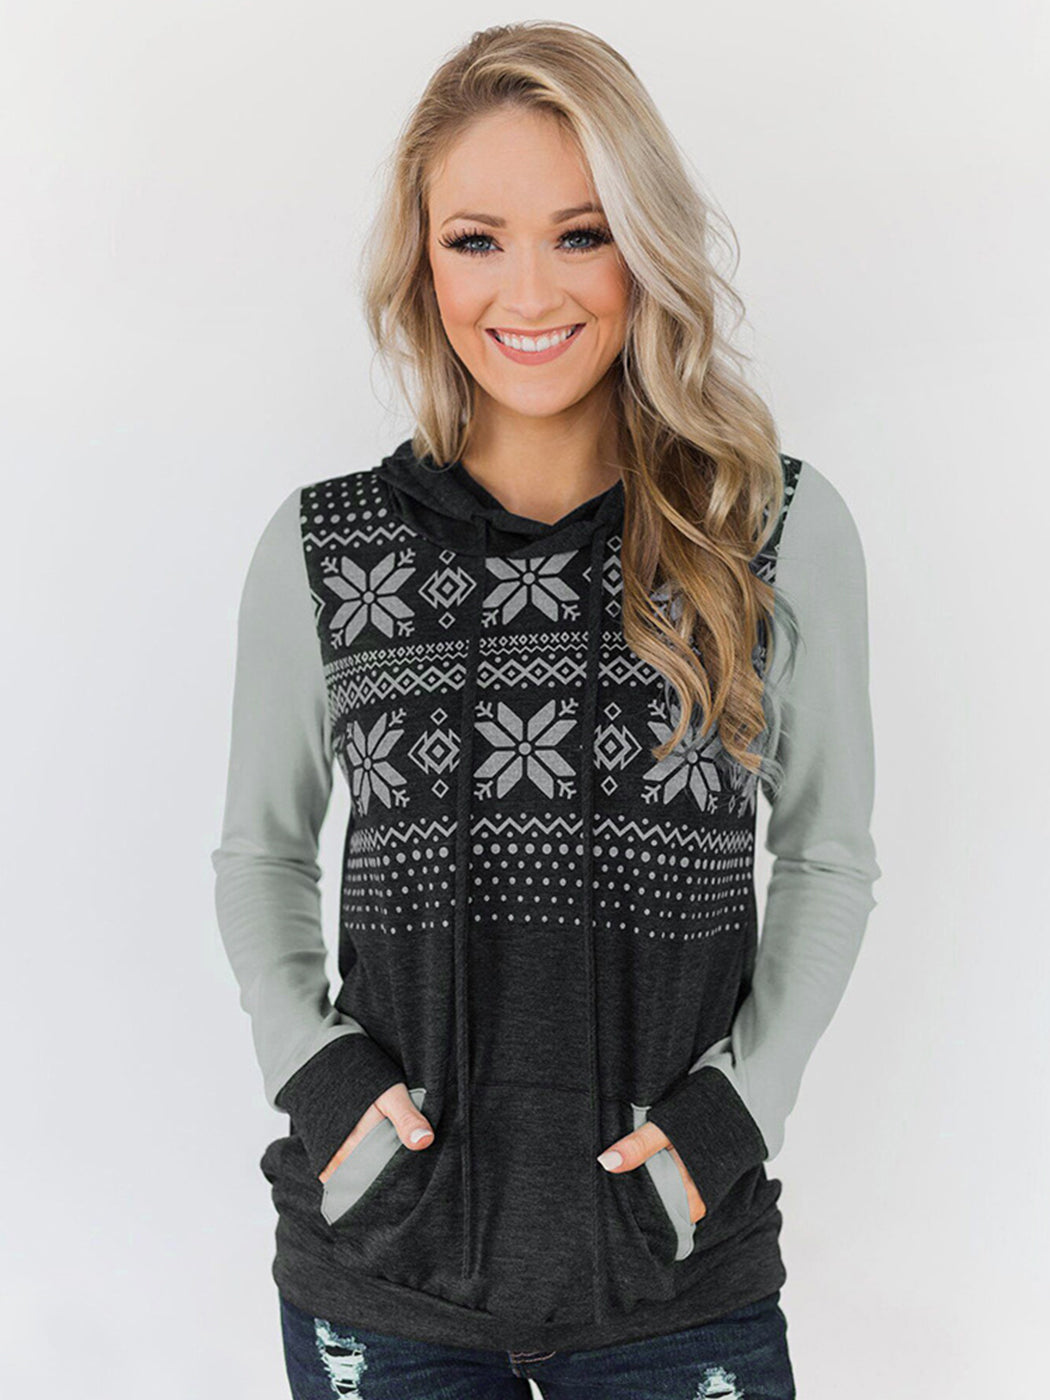 Women Christmas Snowflake Jumper Pullover Tops Printed Long Sleeve Sweatshirt Hoodies